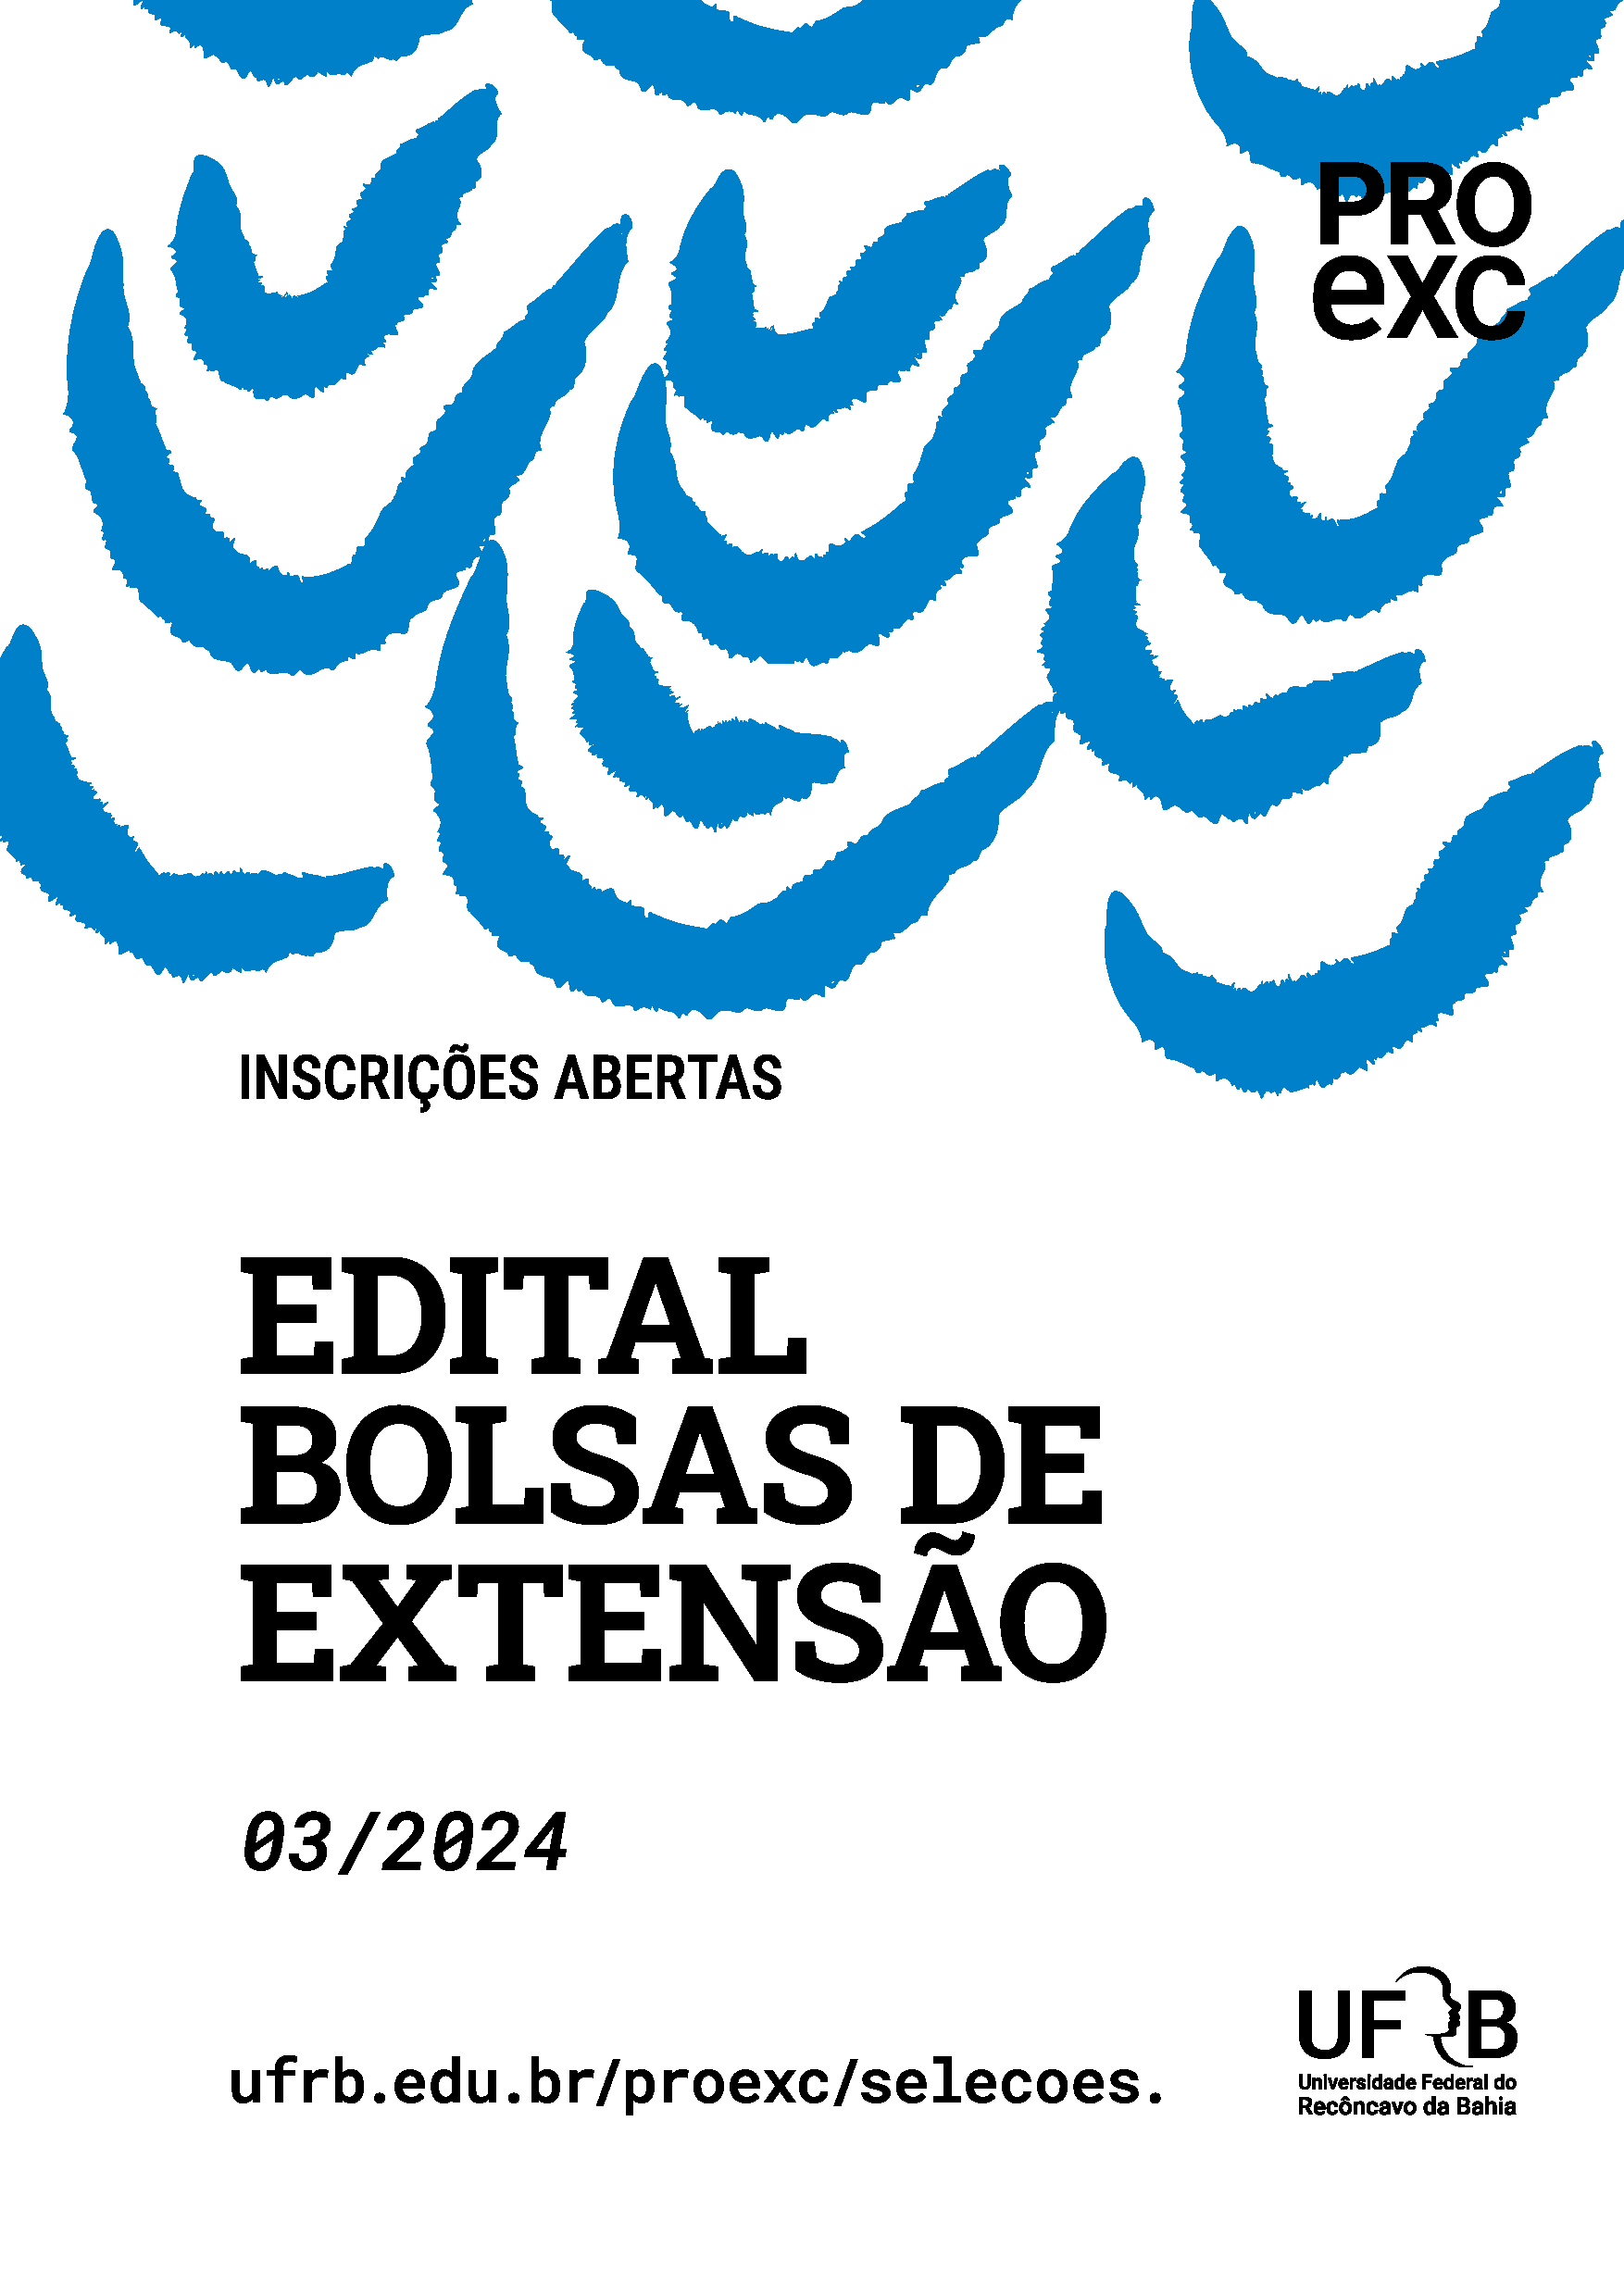 WHATSAPP PROEXC EDITAL BOLSAS EXTENSÃO 03.2024